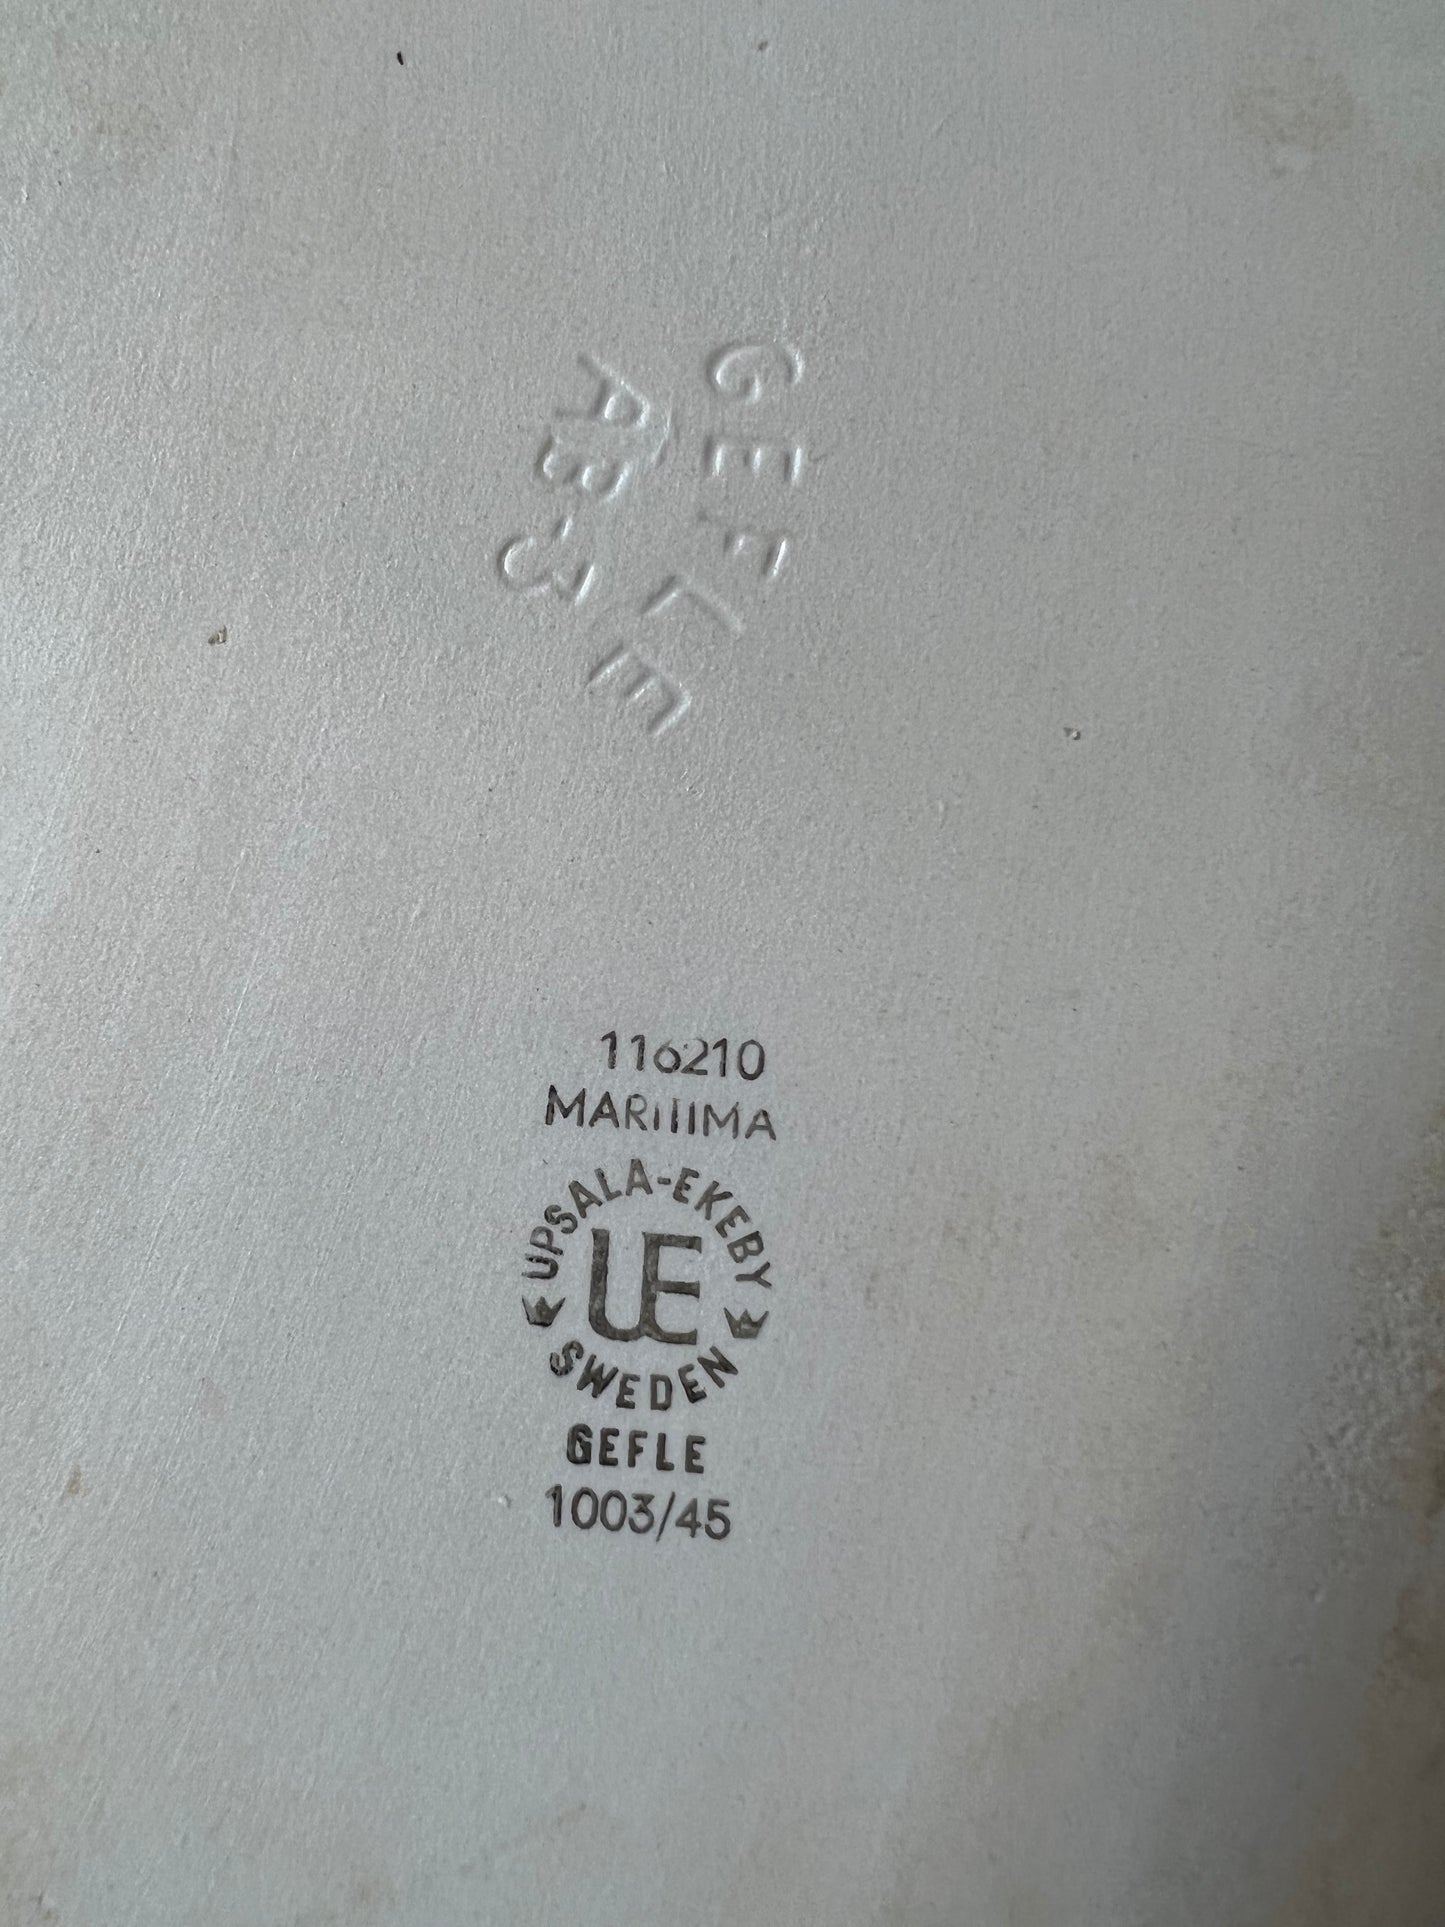 トレイ マリティマ ゲフレ ウプサラ エケビ 33cm x 22.5cm